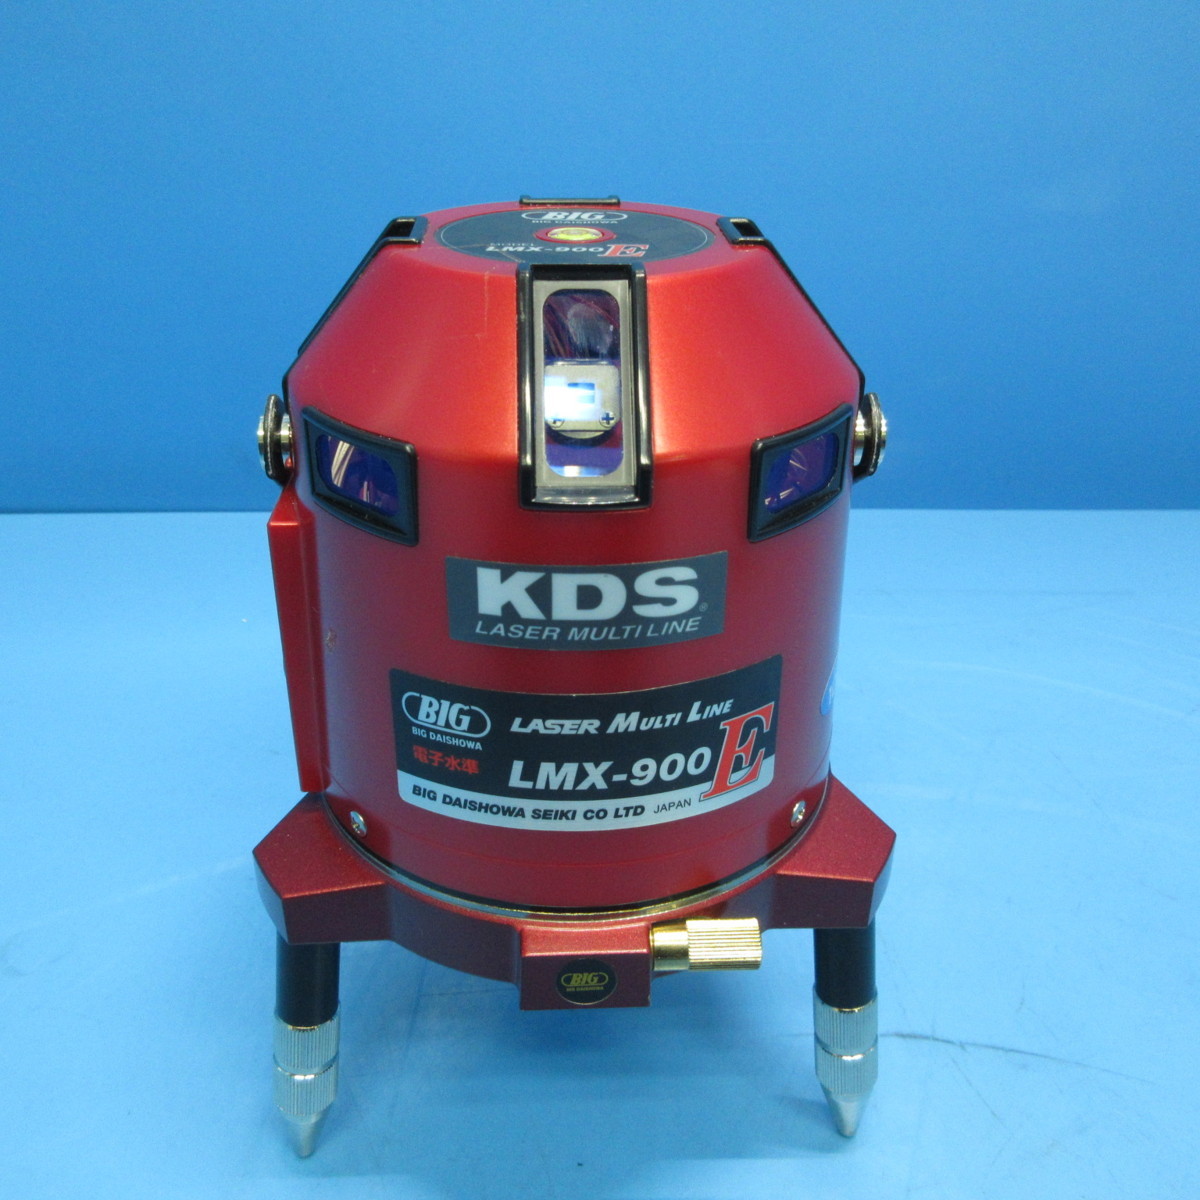 大昭和精機 レーザー墨出し器 レーザーマルチライン LMX-900E (10545